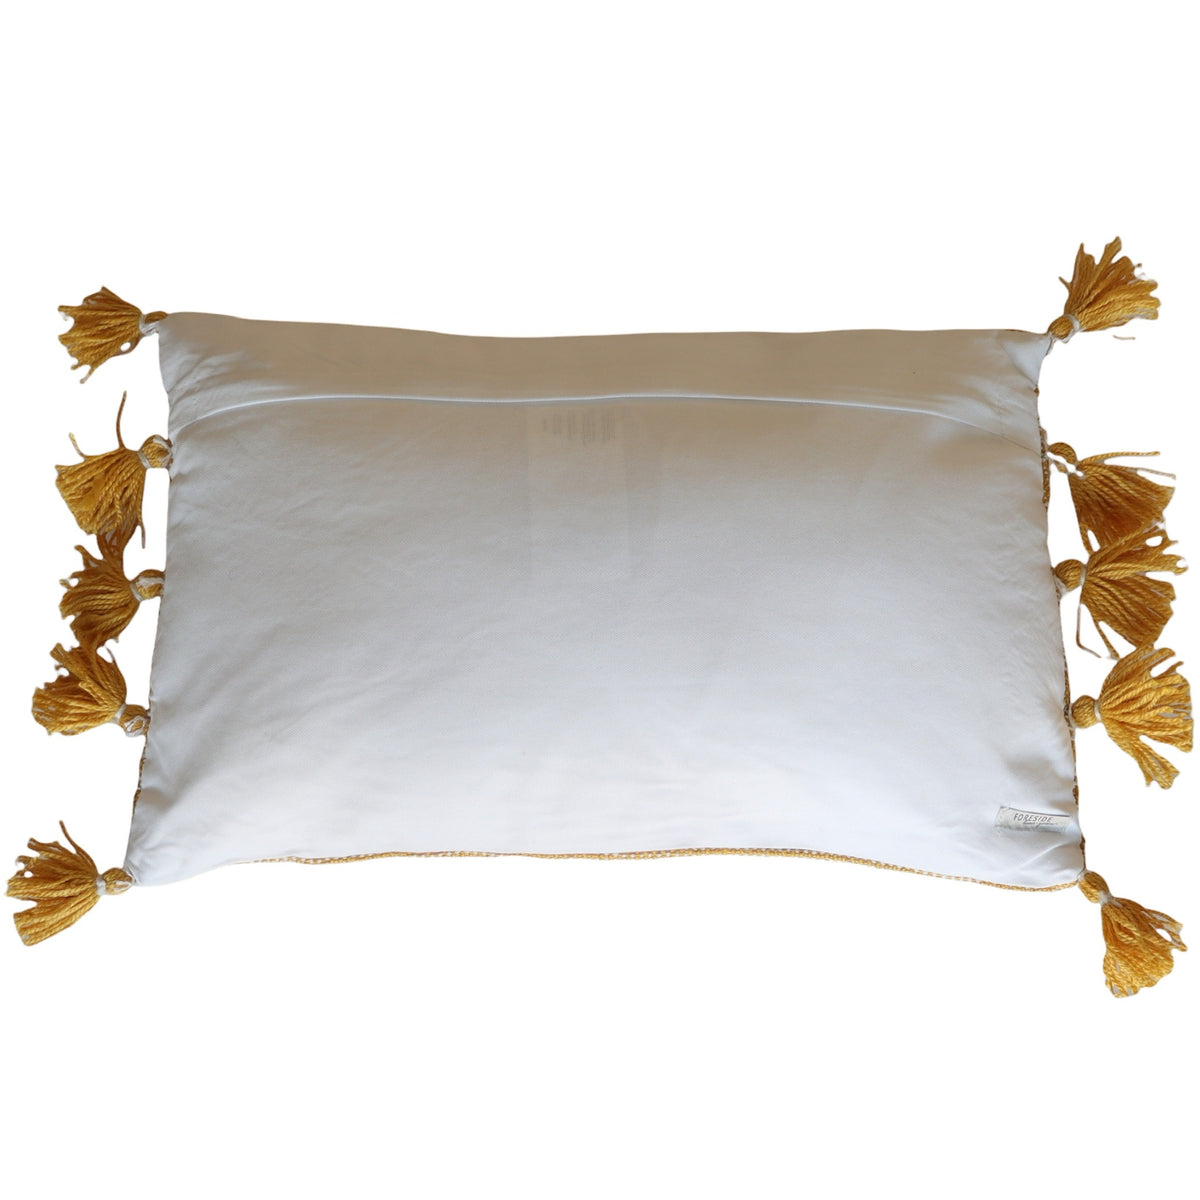 Adeline Hand Woven Indoor/Outdoor Pillow Ochre 14x22 - Holistic Habitat 